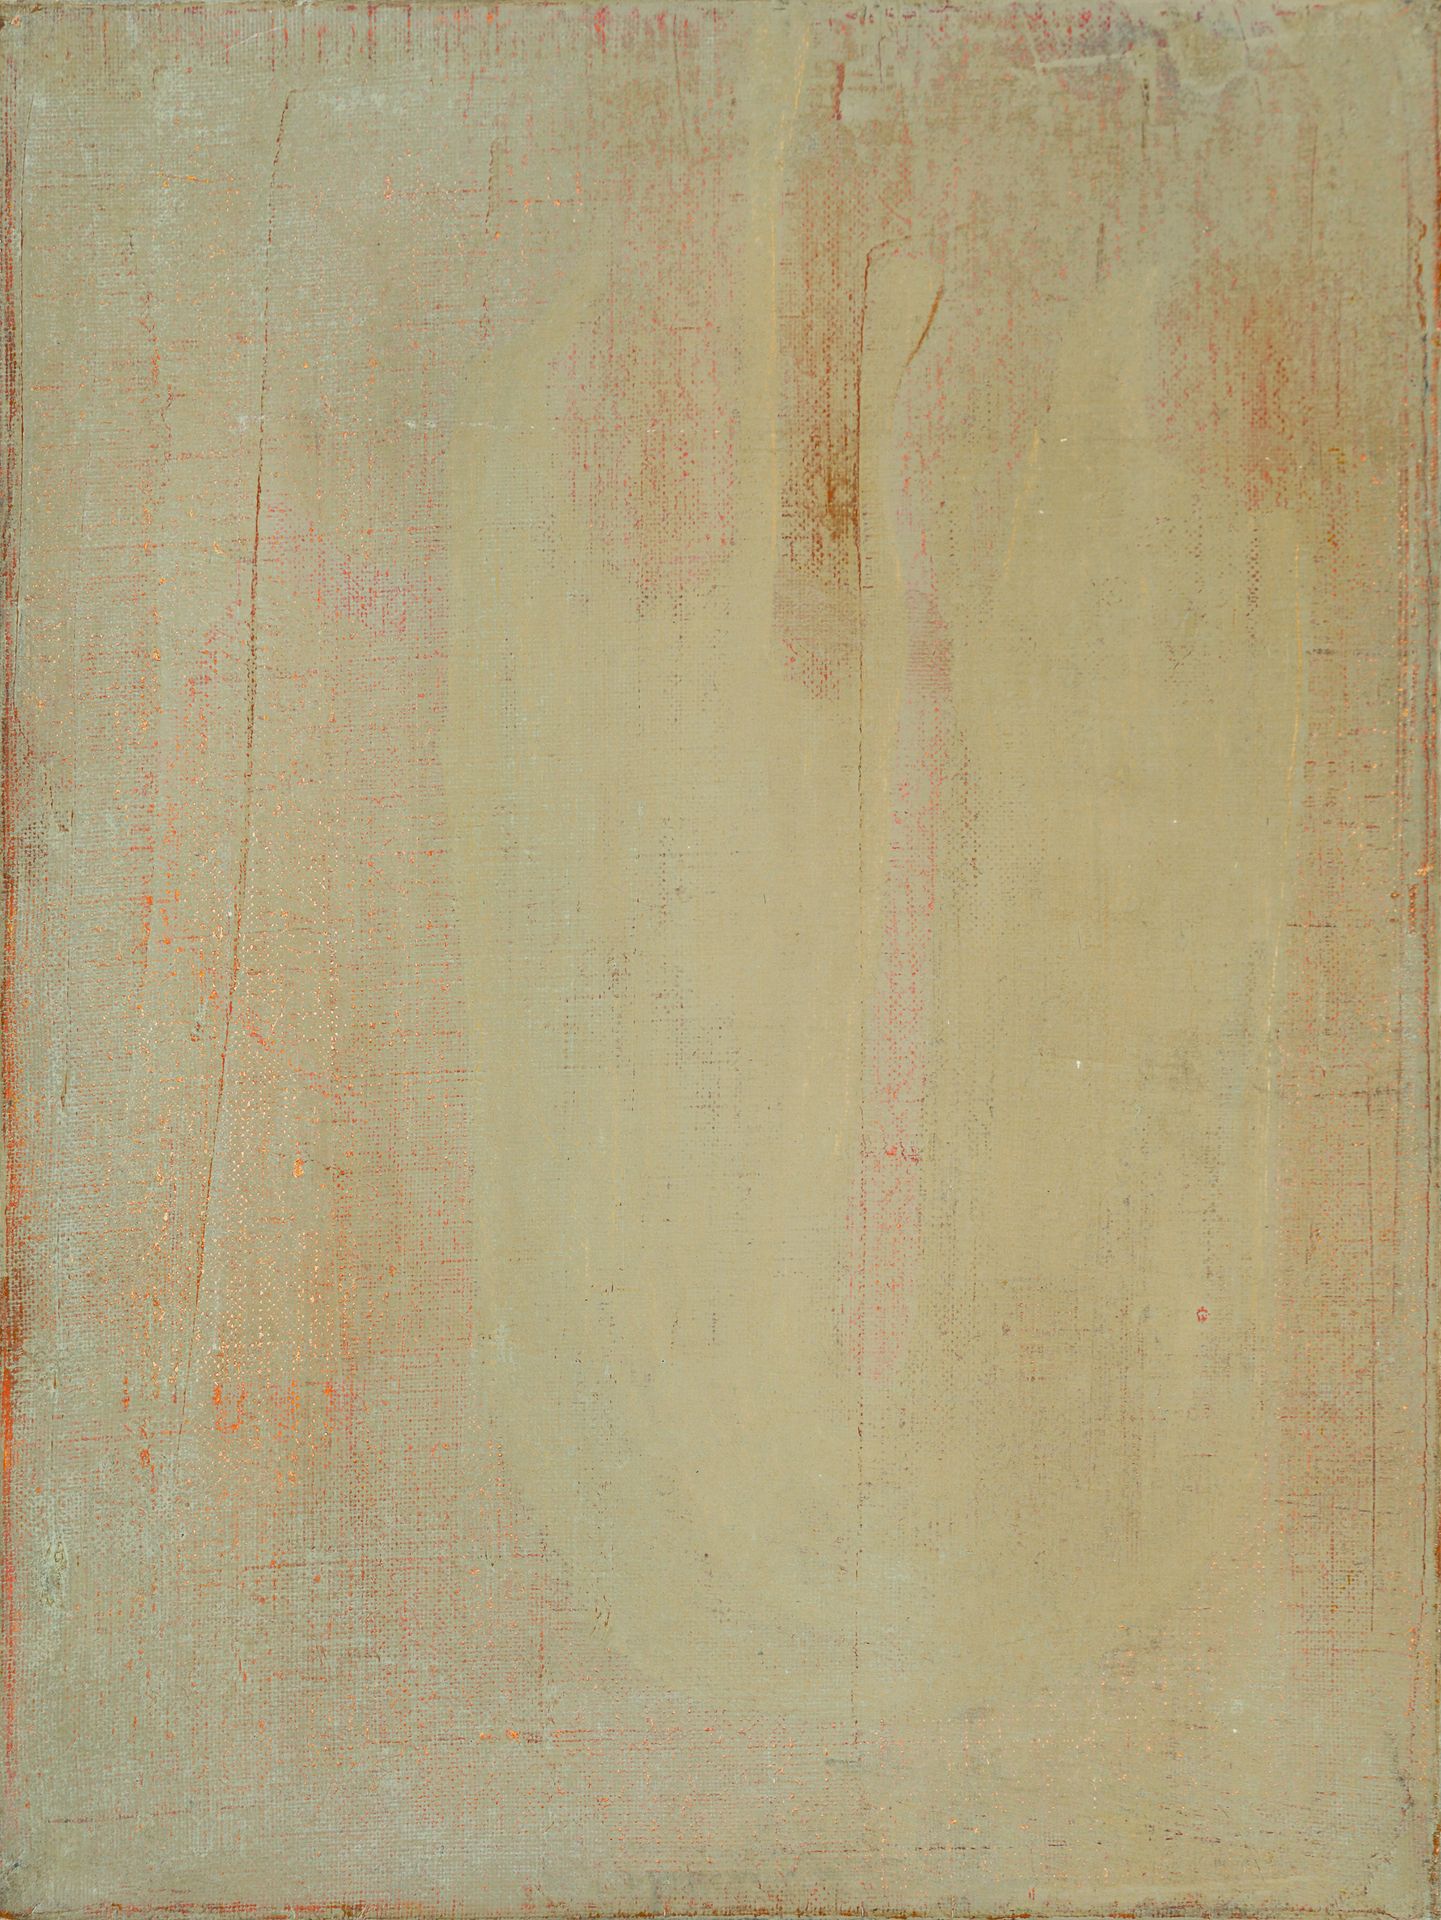 Bohatsch, Erwin Abstraction II, 1993
Huile sur toile
Signé et daté au verso
40 x&hellip;